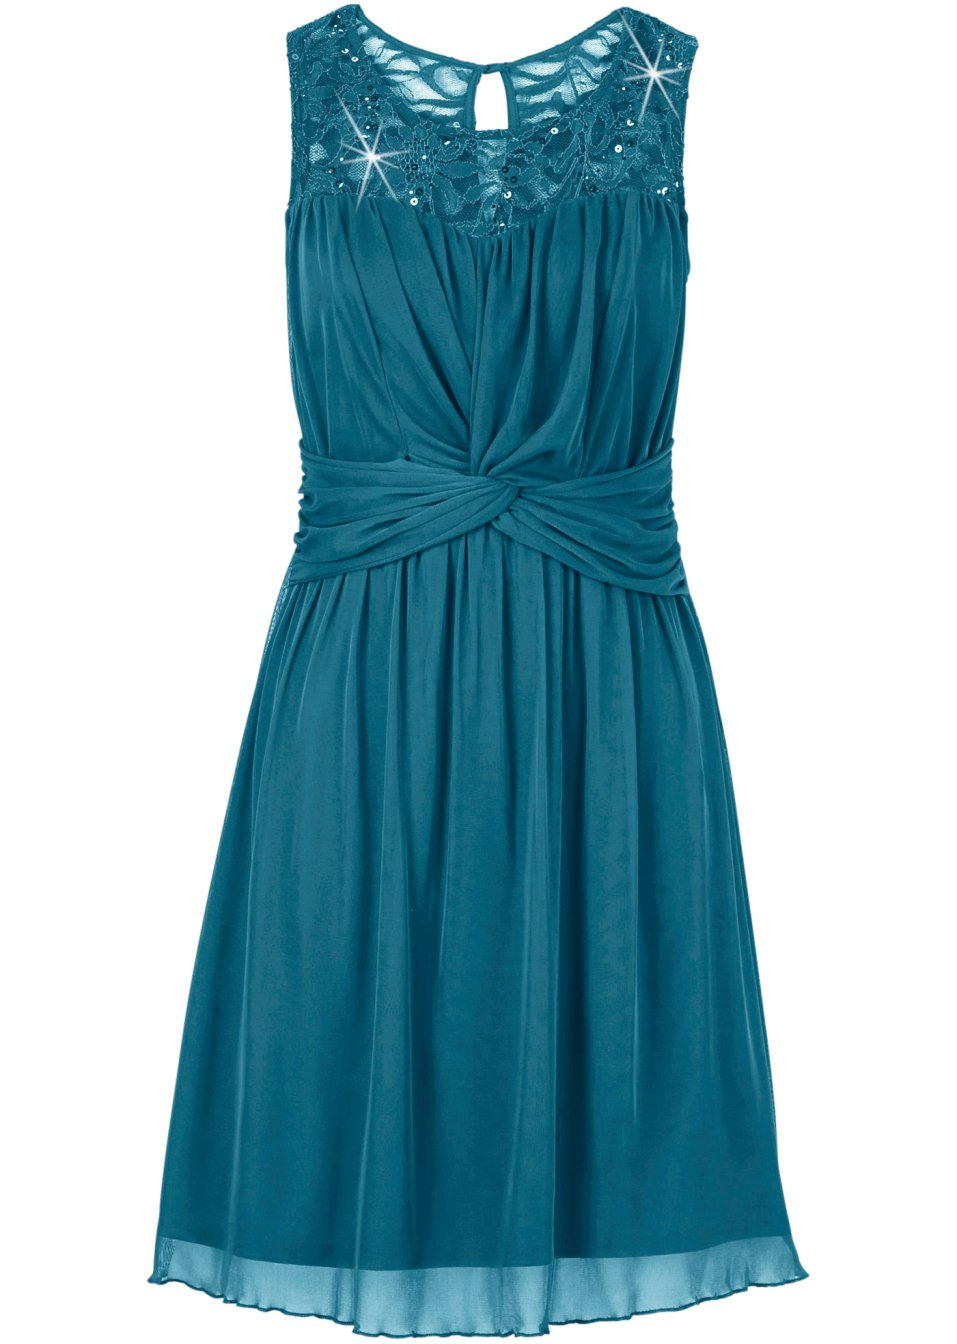 Aufregendes Kleid Mit Vielen Highlights  Smaragd